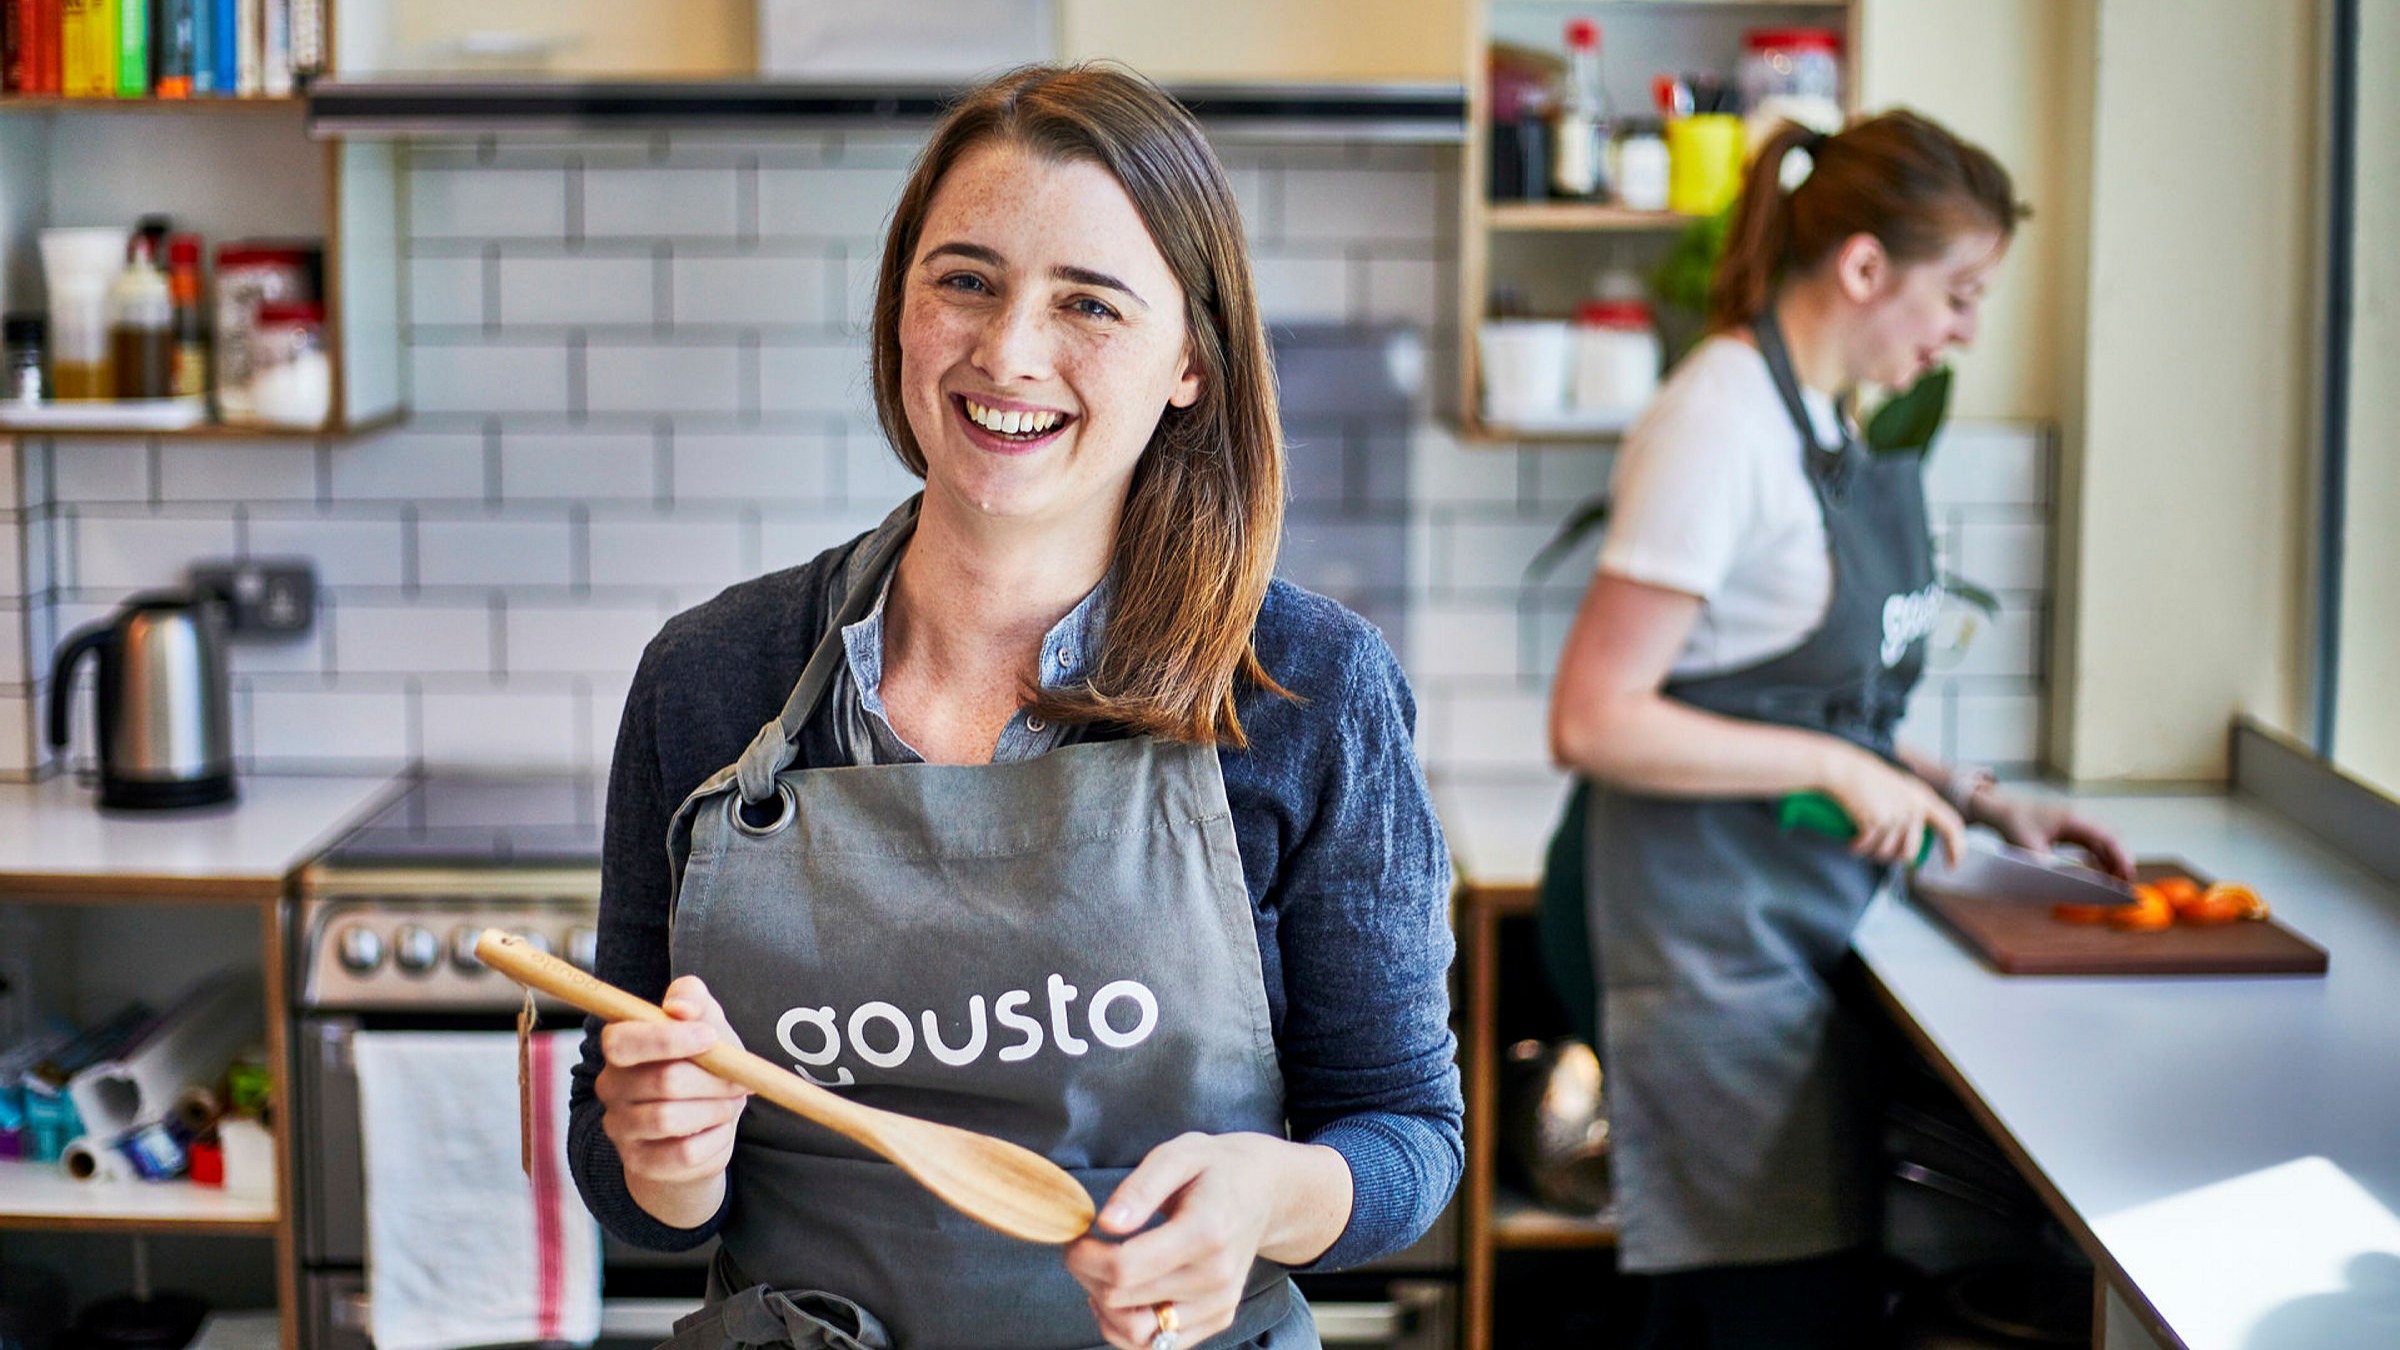 Lebensmittelboxen-Anbieter Gousto will 1.000 zusätzliche Mitarbeiter einstellen | Financial Times